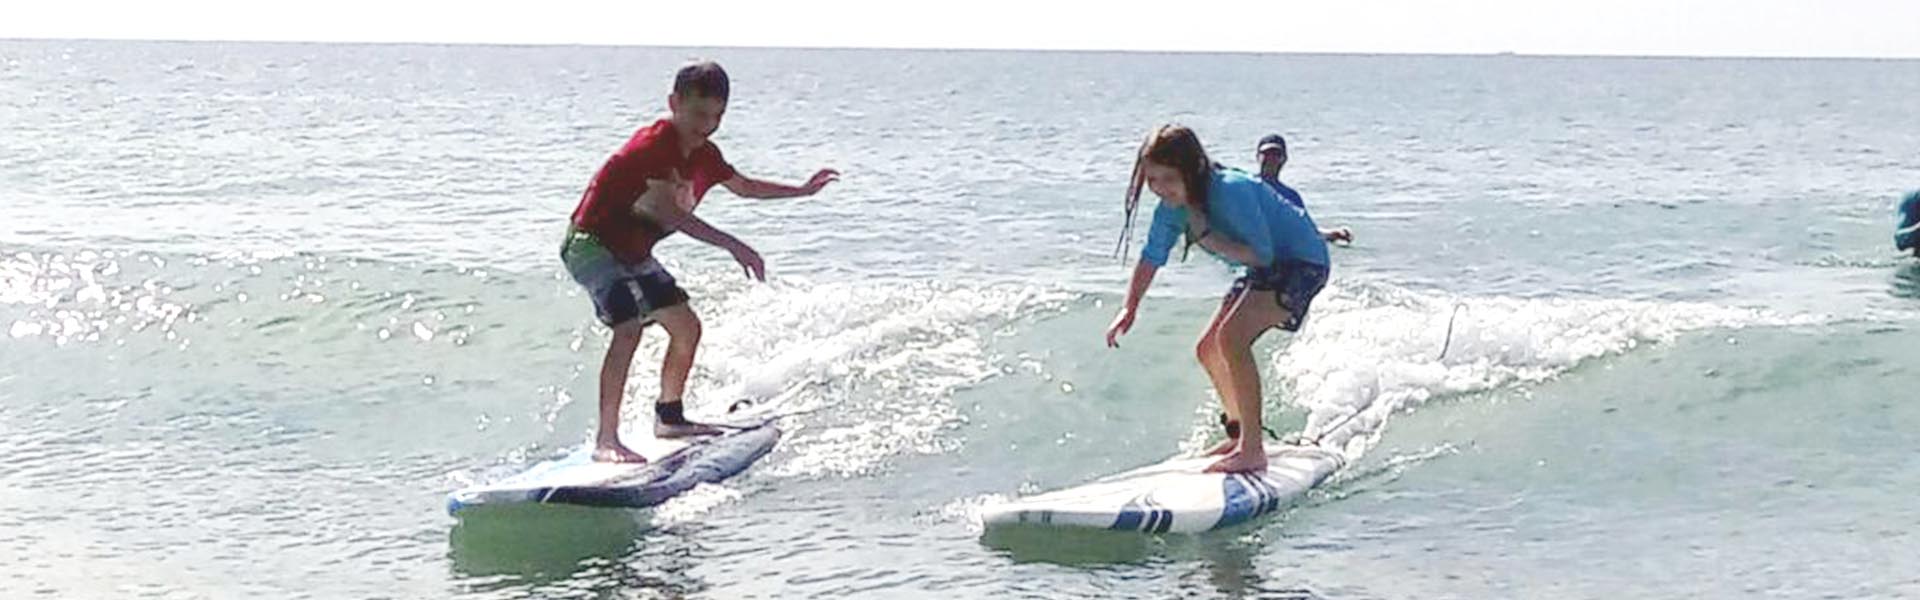 Puerto Vallarta Surf School | Puerto Vallarta Surf Lesson | Puerto Vallarta Stand Up Paddle Lessons